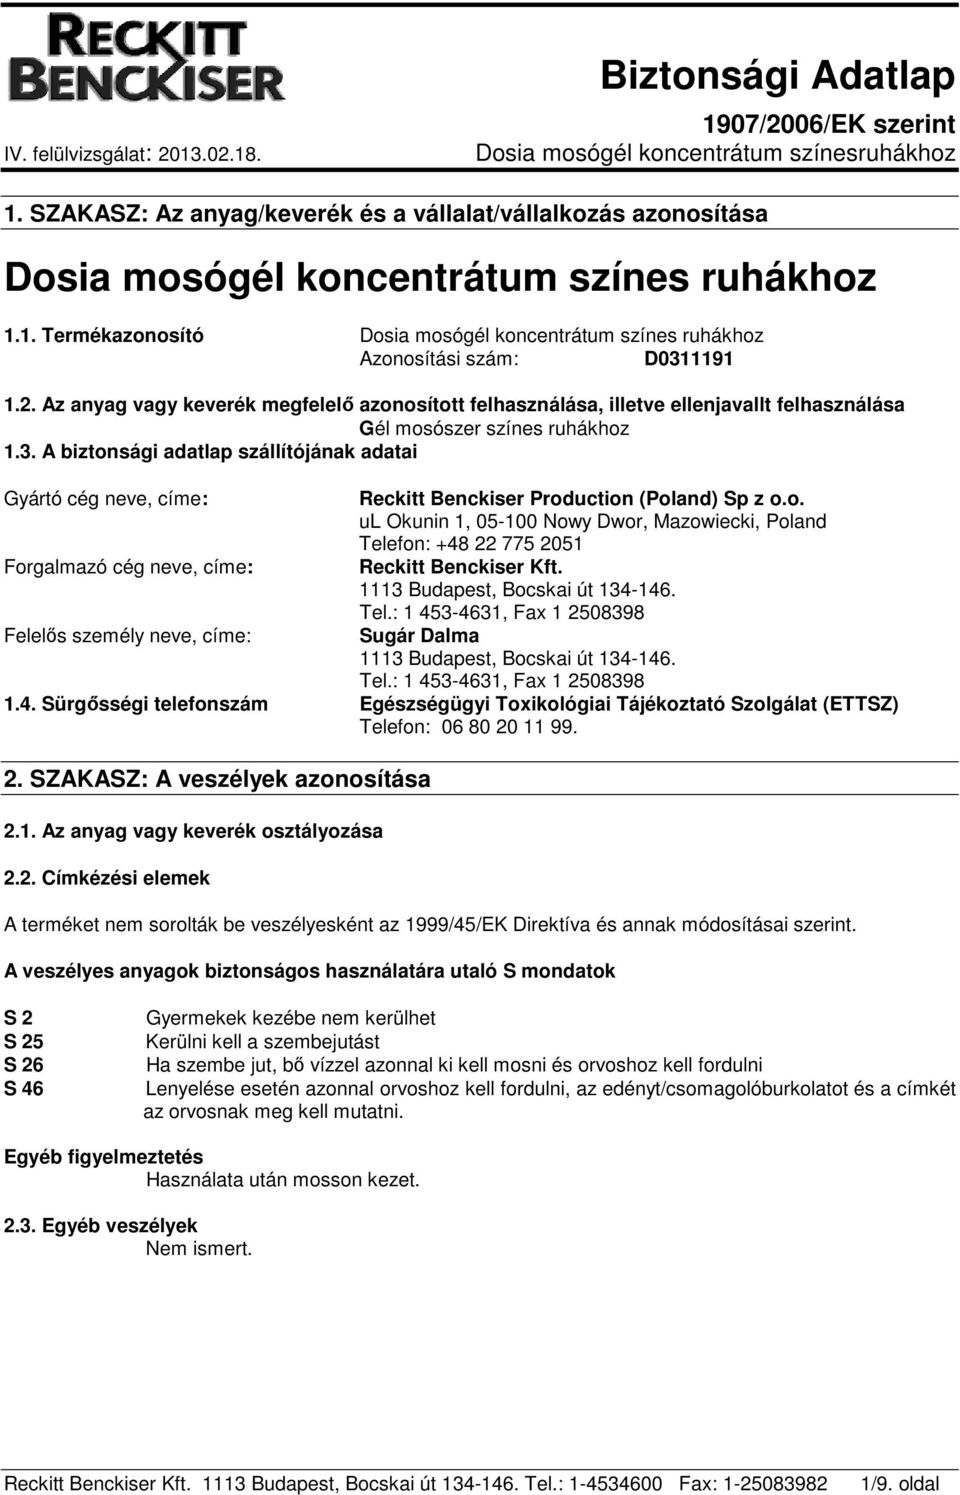 A biztonsági adatlap szállítójának adatai Gyártó cég neve, címe: Forgalmazó cég neve, címe: Felelős személy neve, címe: Reckitt Benckiser Production (Poland) Sp z o.o. ul Okunin 1, 05-100 Nowy Dwor, Mazowiecki, Poland Telefon: +48 22 775 2051 Reckitt Benckiser Kft.